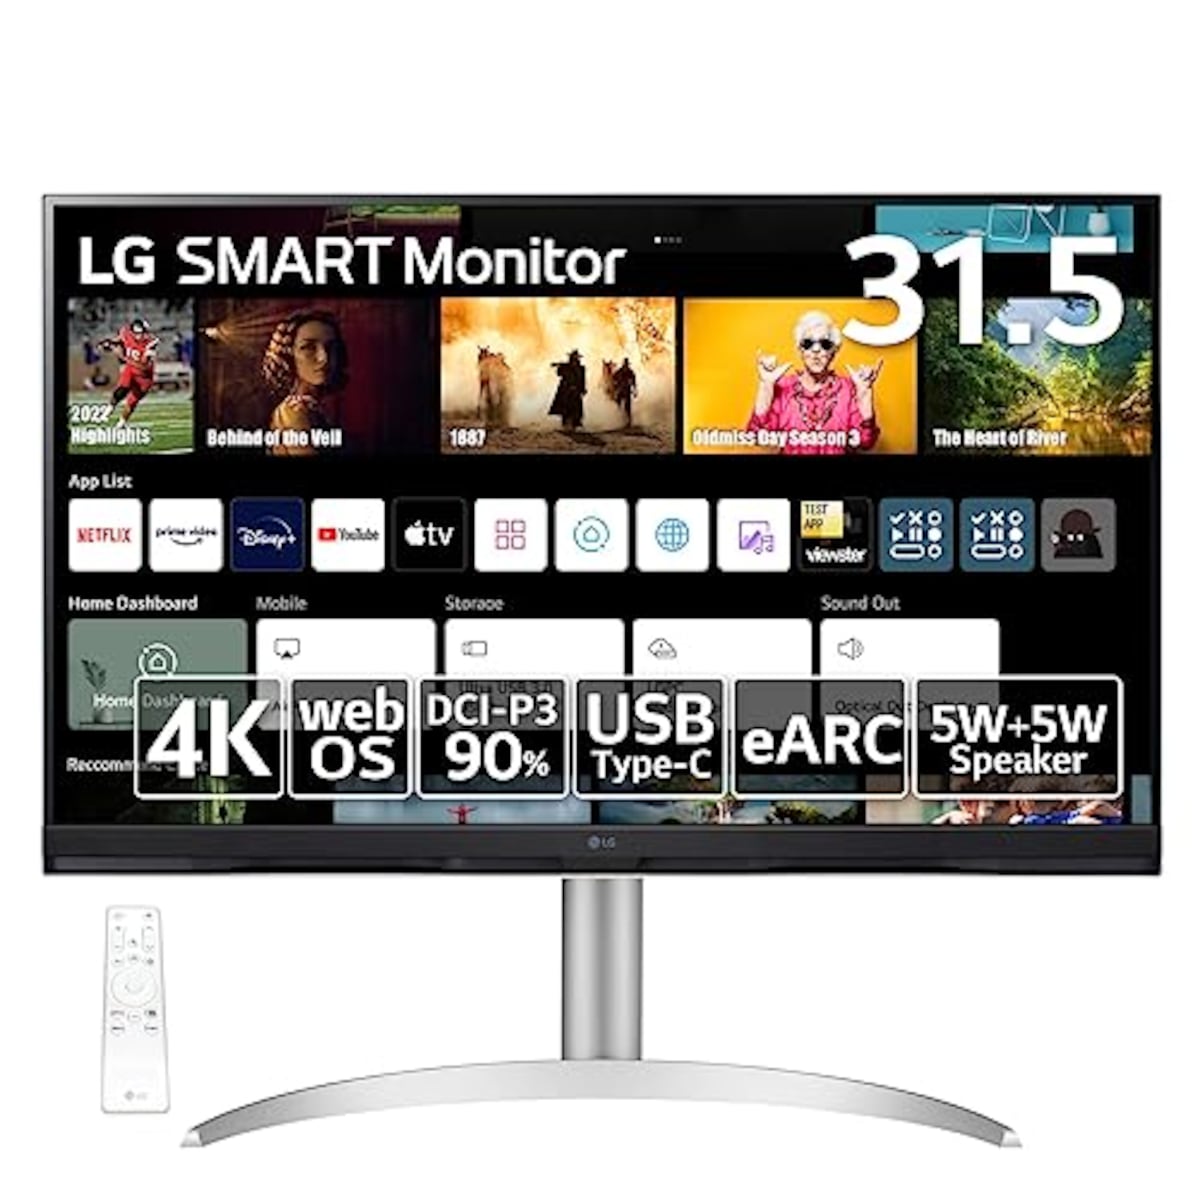 LG スマートモニター / 32SQ730S-W 31.5インチ/作業効率アップ、ビジネス、映画、VOD視聴/ 4K / webOS22搭載 / VA/アンチグレア/AirPlay 2 /チルト、高さ調整対応/USB Type-C､eARC対応HDMI / 3年安心・無輝点保証